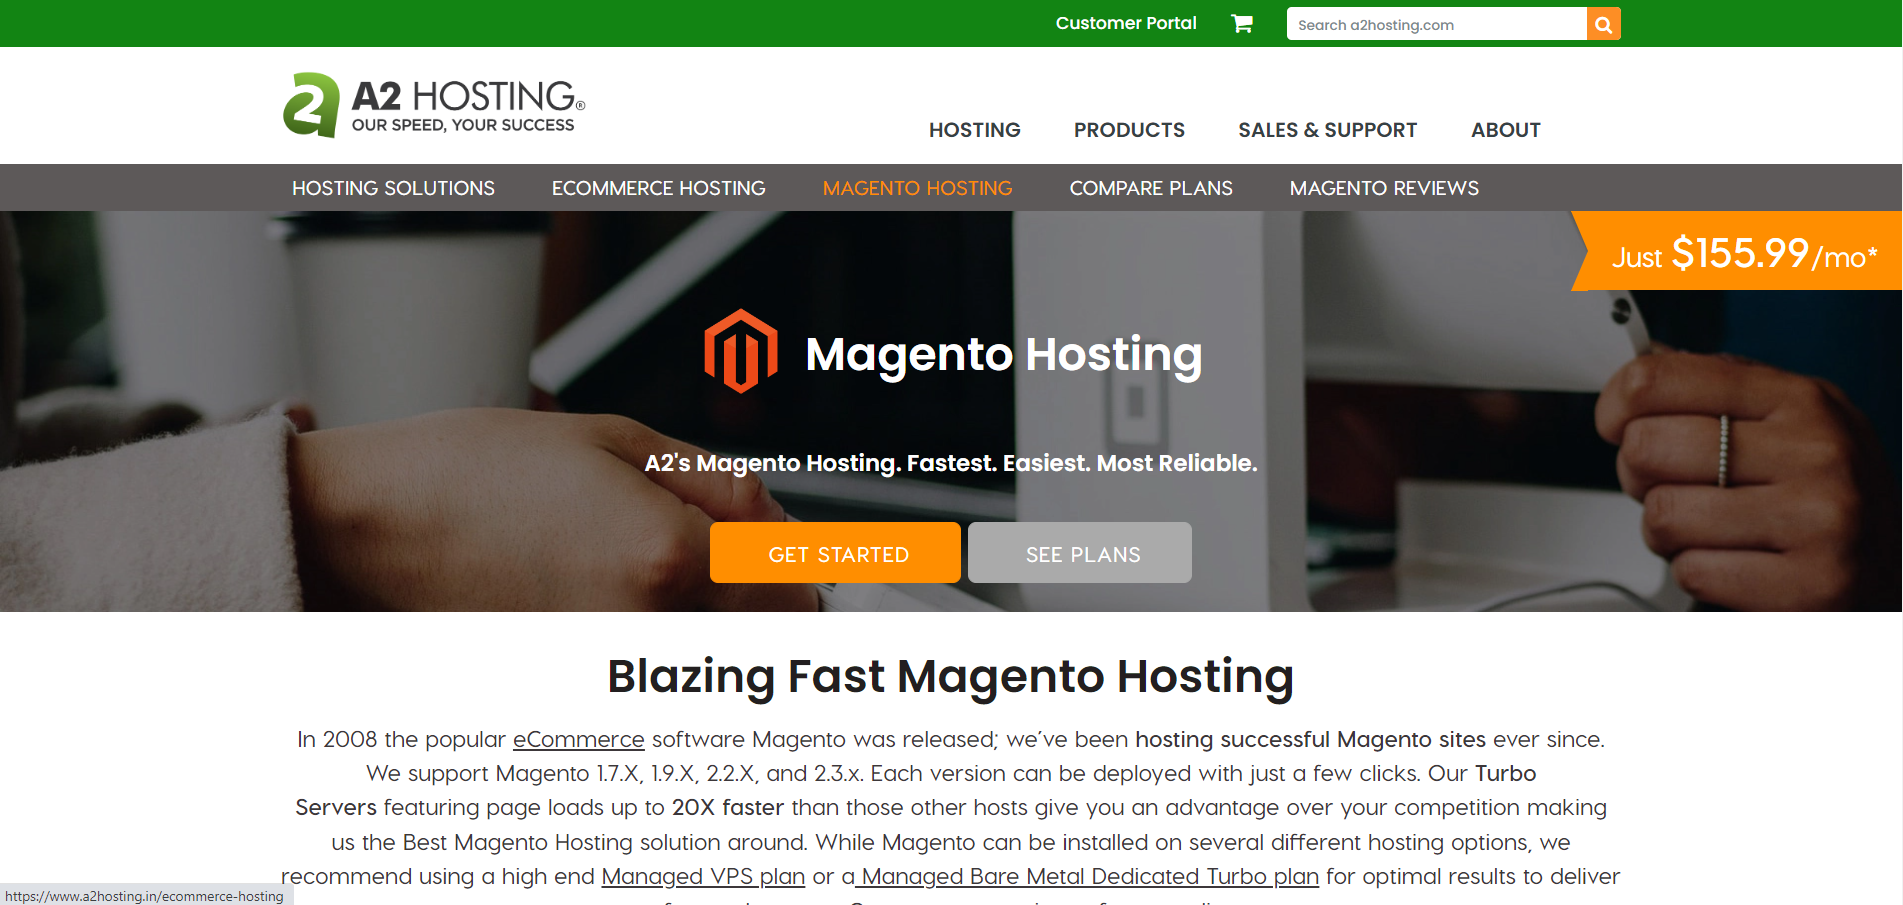 Fastest Magento Hosting A2 Hosting